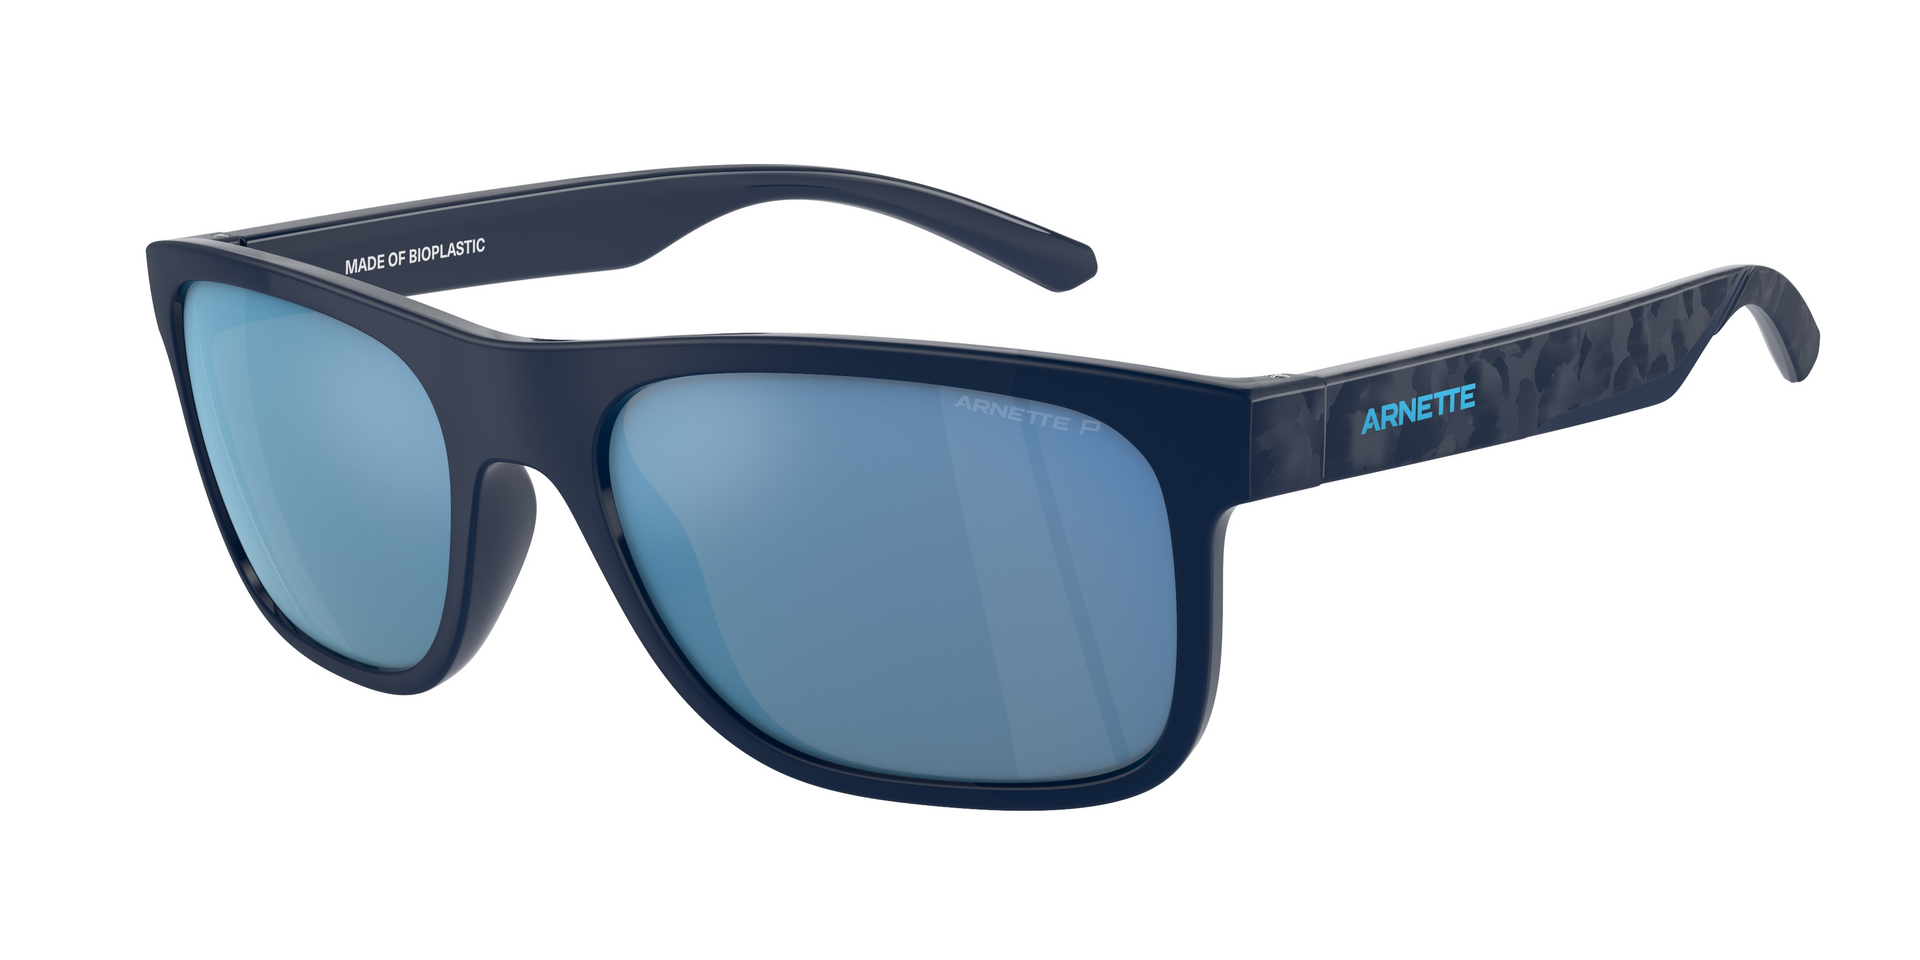 Das Bild zeigt die Sonnenbrille AN4341 275422 von der Marke Arnette in blau/schwarz.